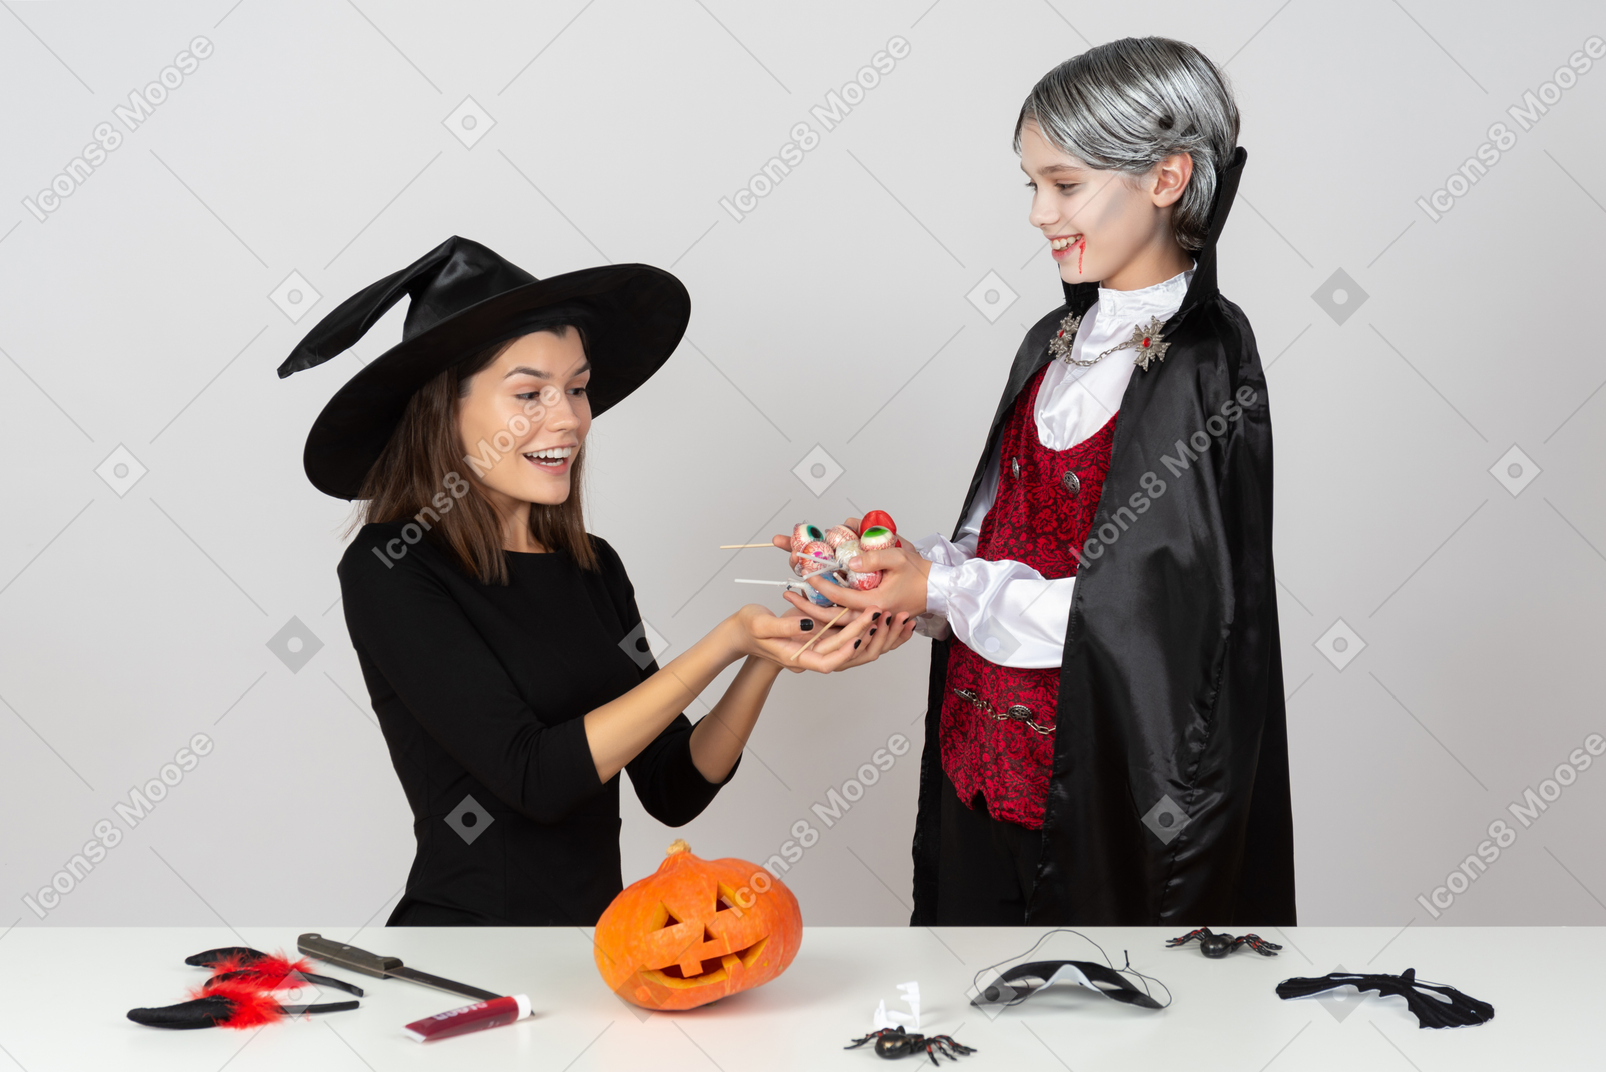 Junge im vampirkostüm zeigt seiner mutter süßigkeiten im katzenkostüm